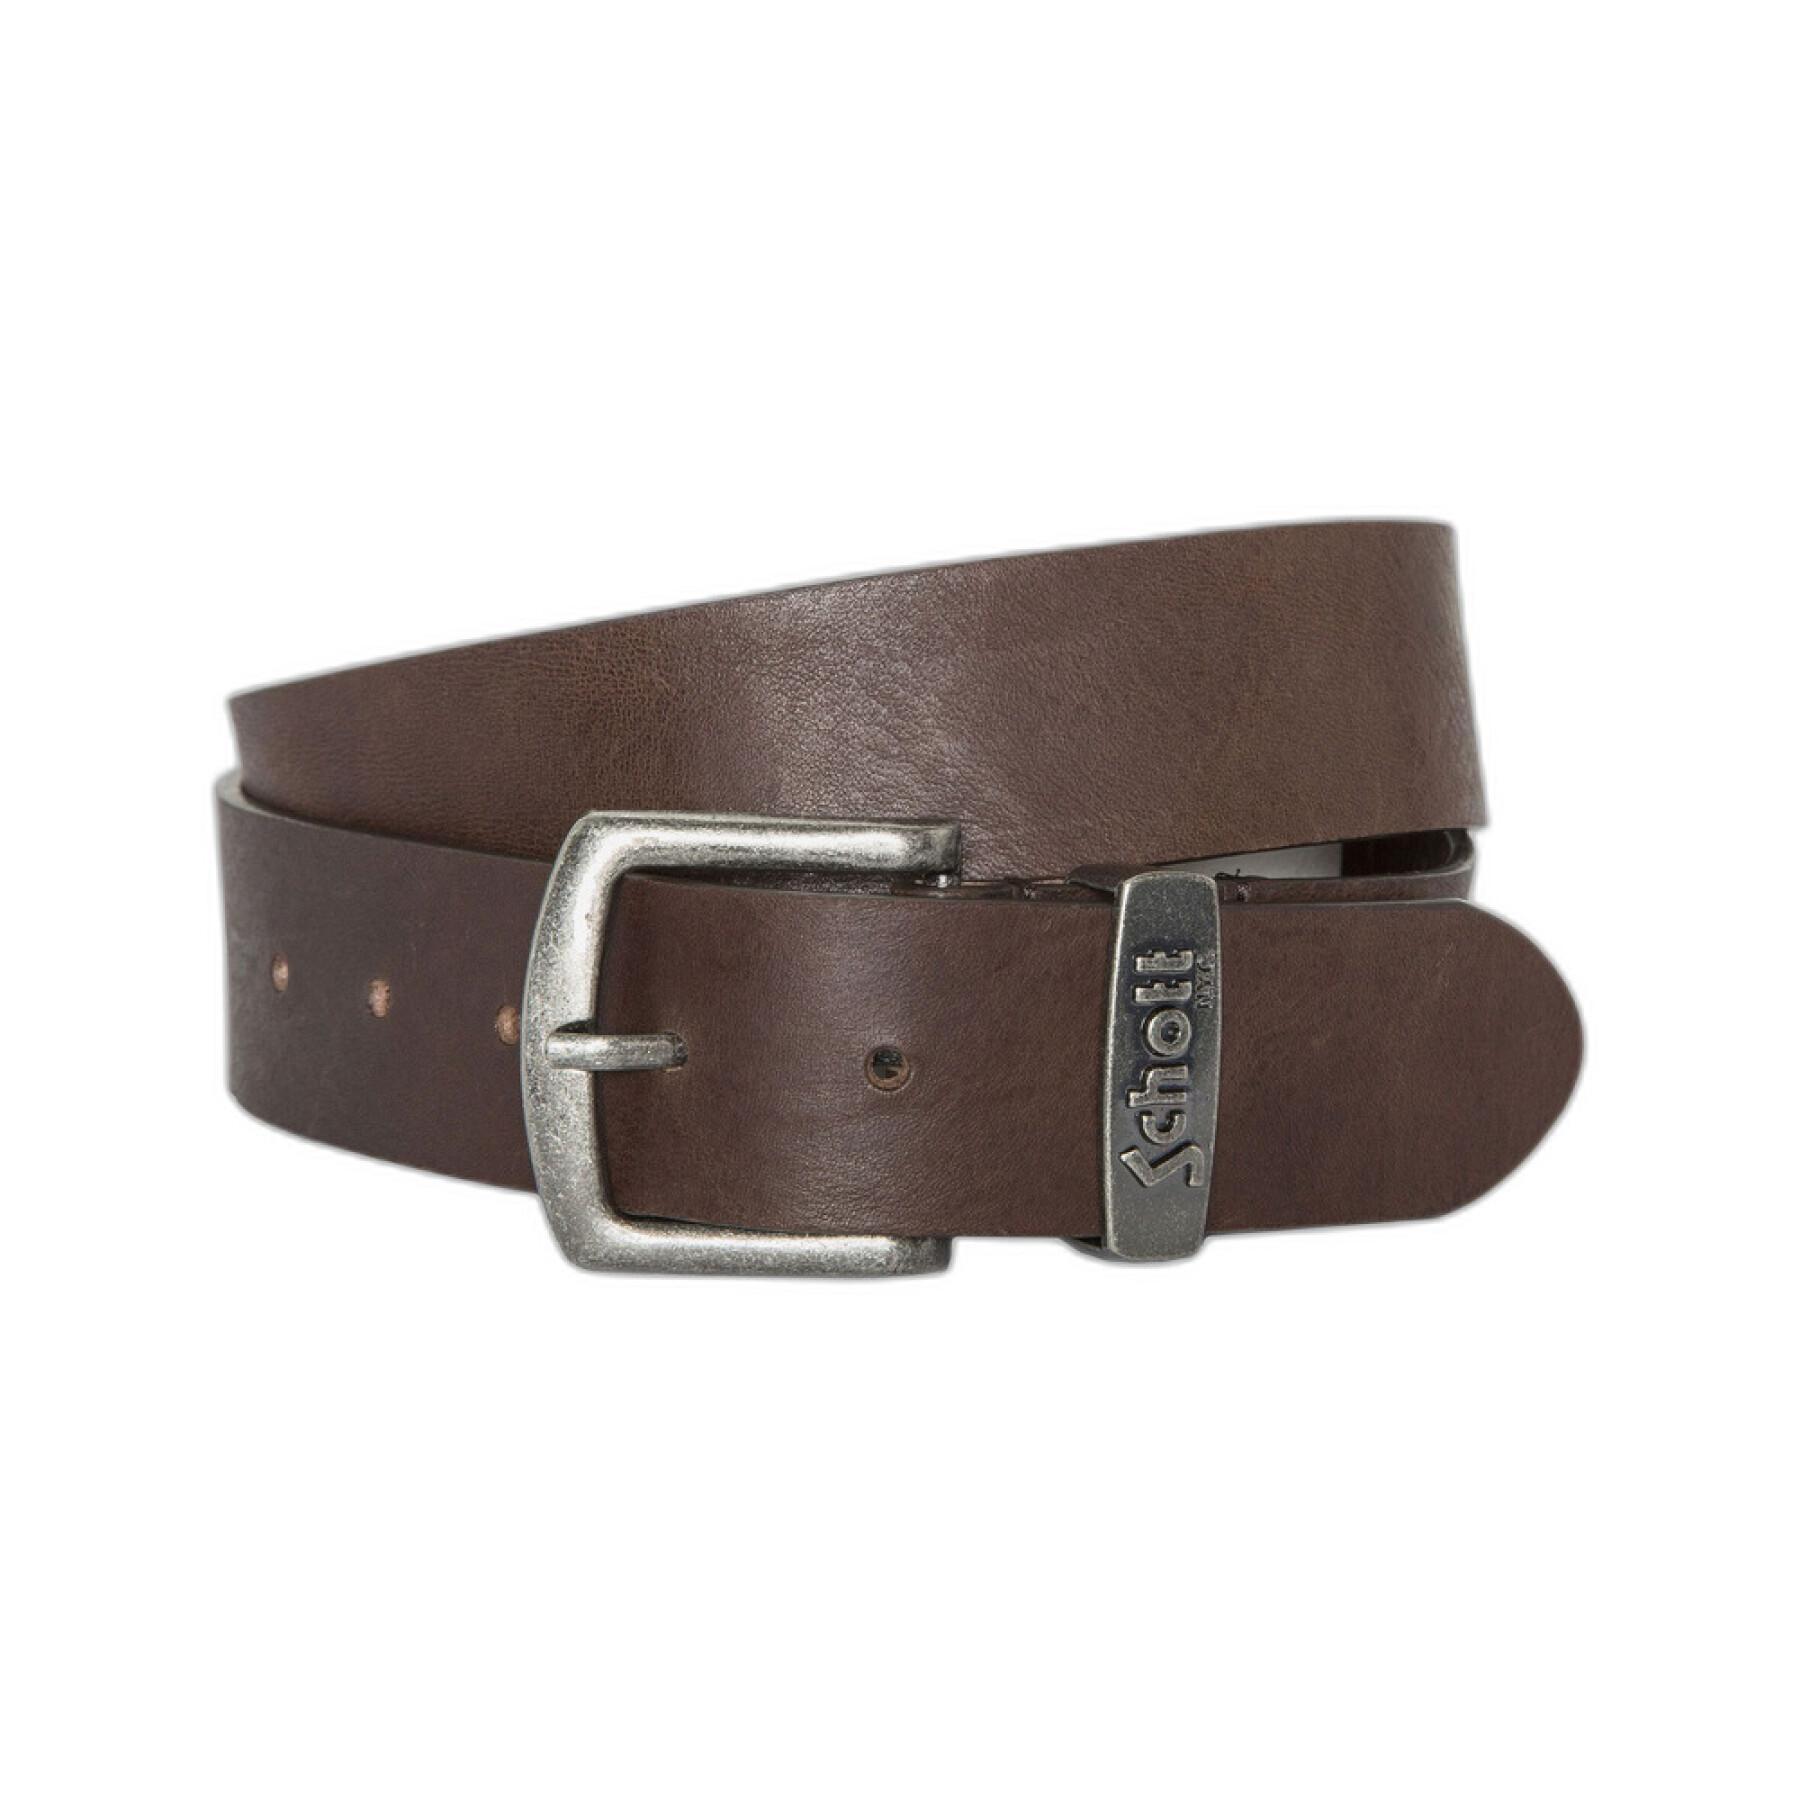 Leather belt buckle woman Schott zamac